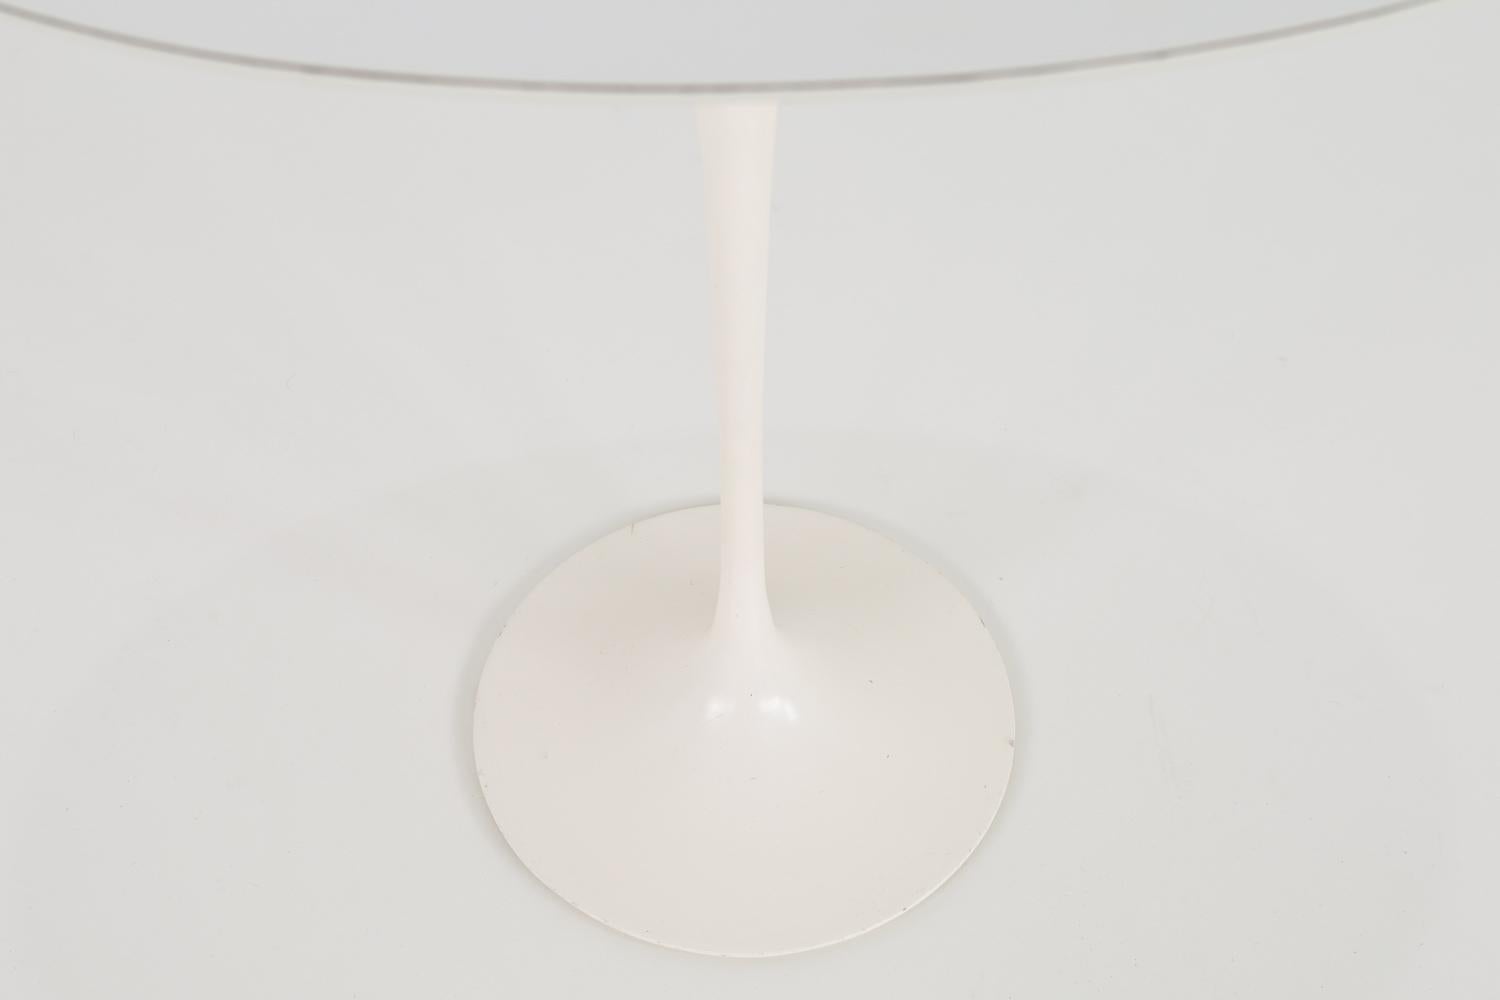 Eero Saarinen für Knoll Mitte des Jahrhunderts Laminat Beistelltisch
Maße: 22.5 breit x 15 tief x 20,5 hoch

Jedes Möbelstück ist in einem so genannten restaurierten Vintage-Zustand erhältlich. Nach dem Kauf wird es gründlich gereinigt und